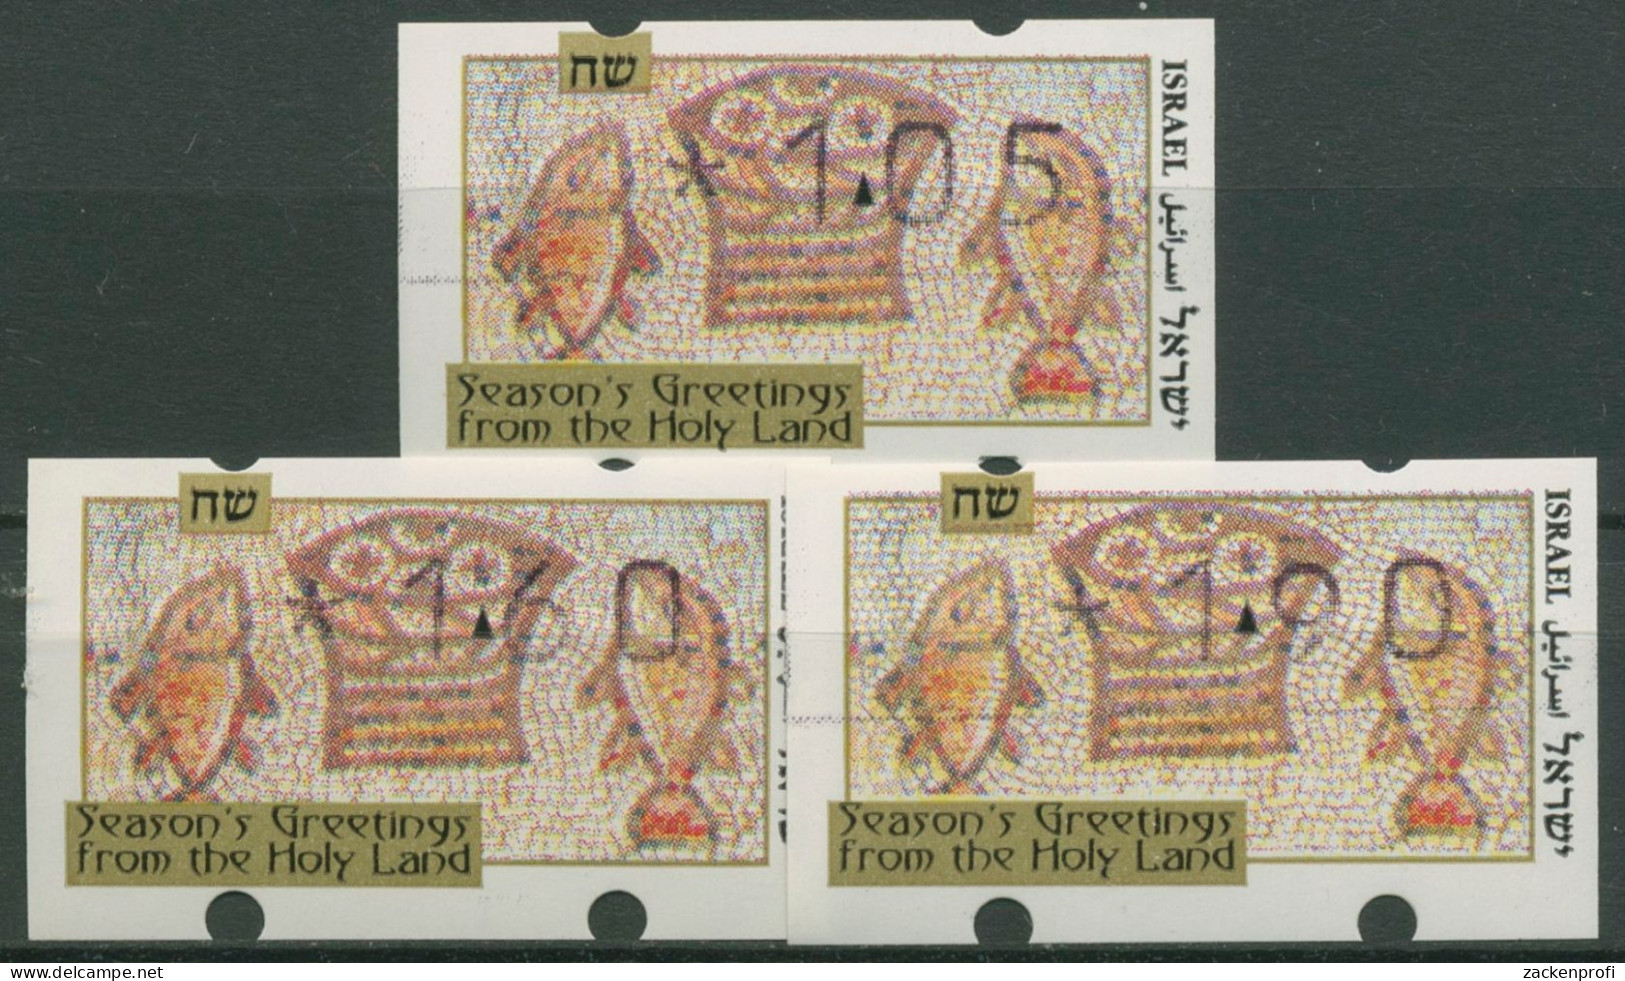 Israel 1996 Automatenmarken Weihnachten Satz 3 Werte ATM 29 S1 Postfrisch - Frankeervignetten (Frama)